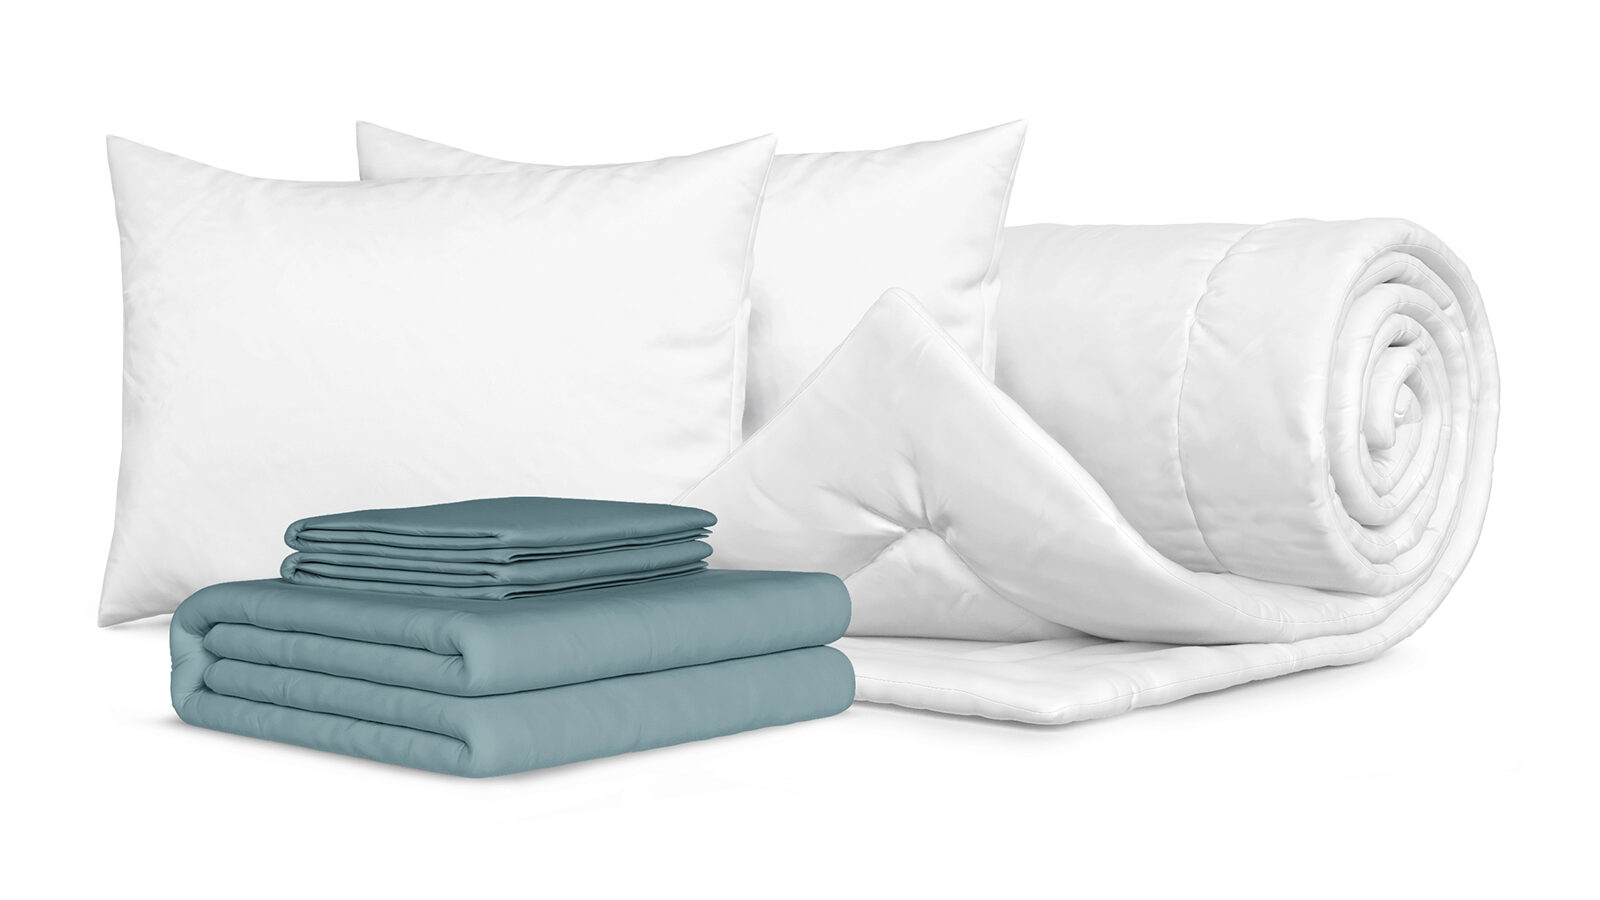 Комплект Одеяло Beat + 2 Подушка Sky + Комплект постельного белья Comfort Cotton, цвет: Серо-голубой голубой ястреб